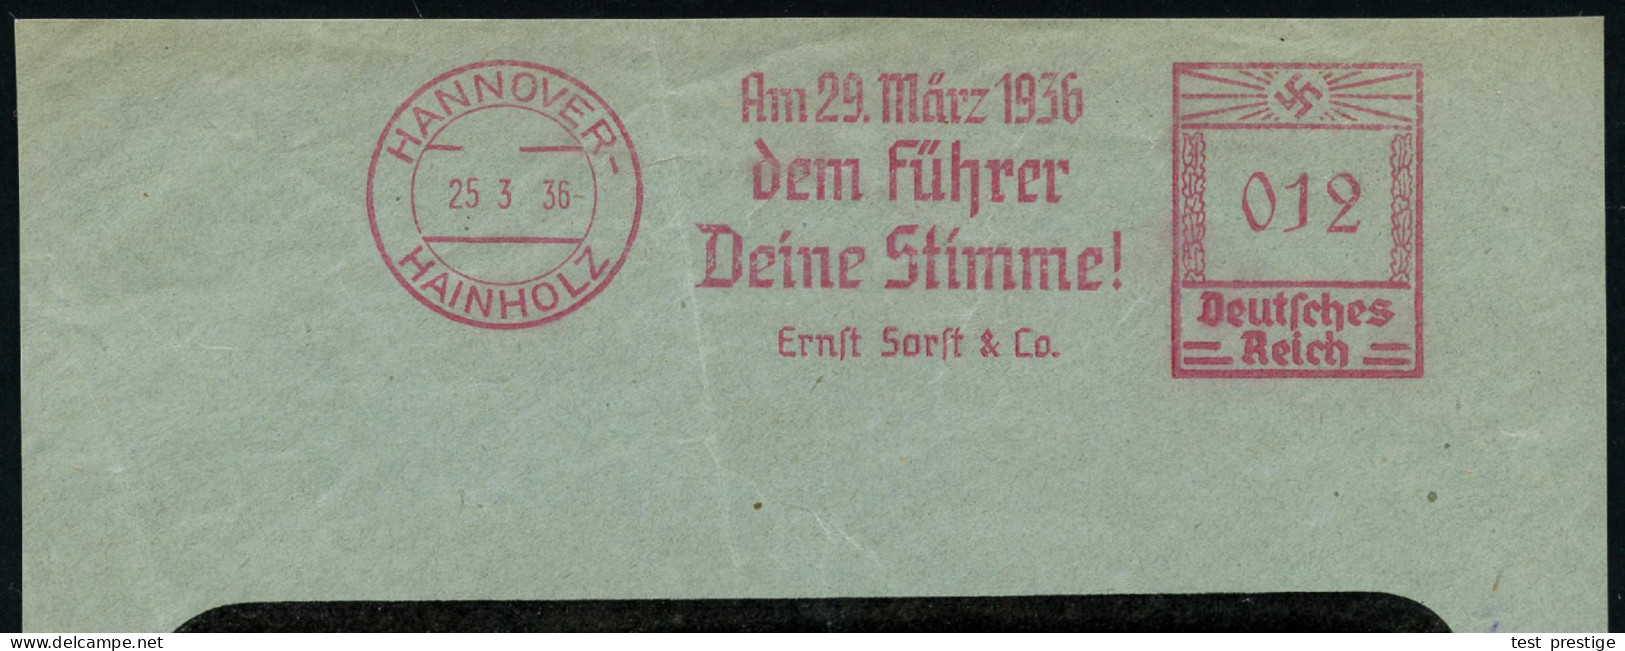 HANNOVER-/ HAINHOLZ/ Am 29.März 1936/ Dem Führer/ Deine Stimme!/ Ernst Sorft & Co. 1936 (25.3.) Sehr Seltener AFS Franco - Autres